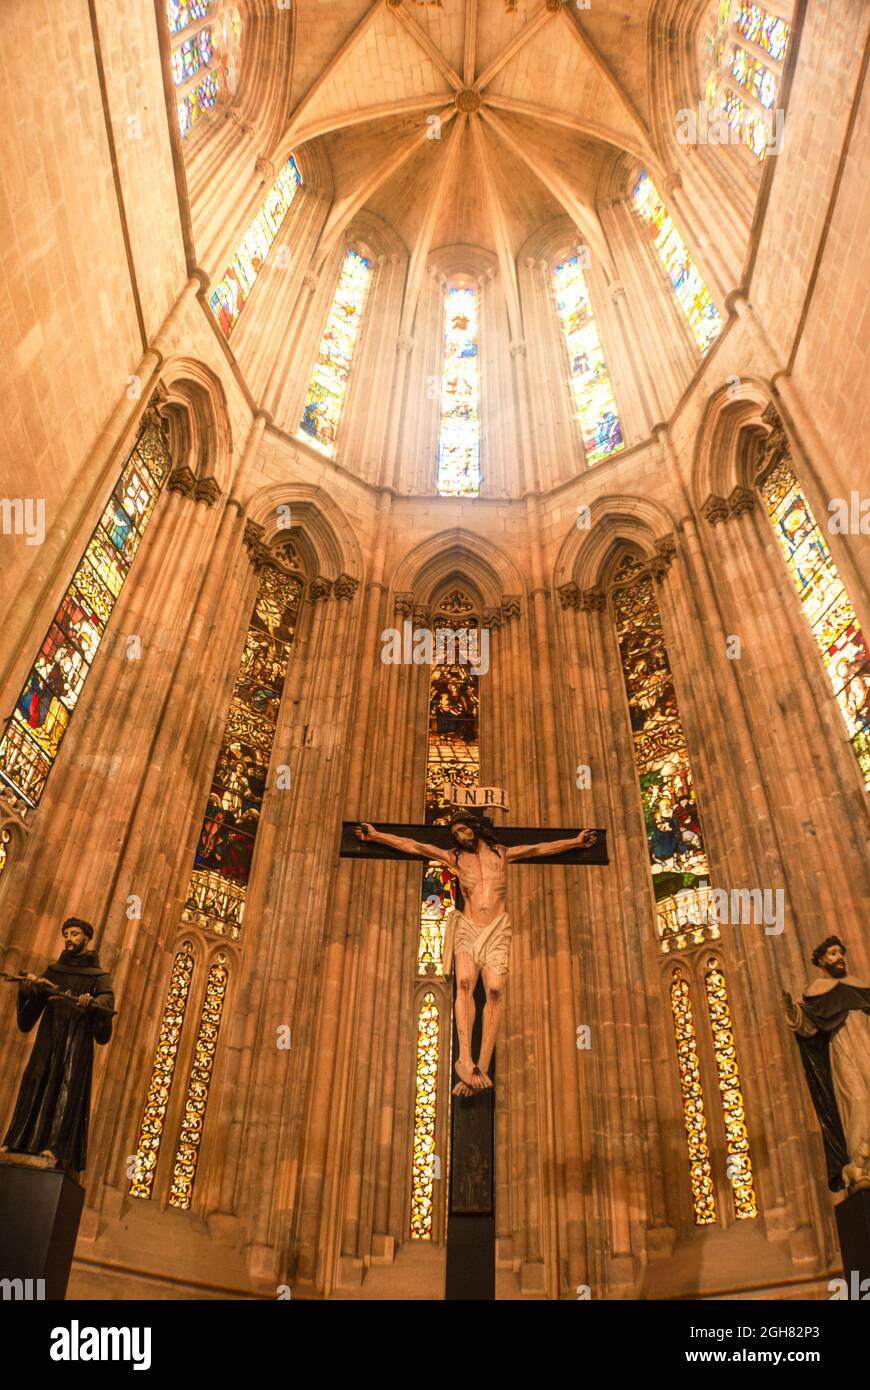 Schöne Decke der alten gotischen Kirche mit Buntglasfenstern und geometrischem Muster - Kloster von Batalha, Portugal, selektiver Fokus Stockfoto